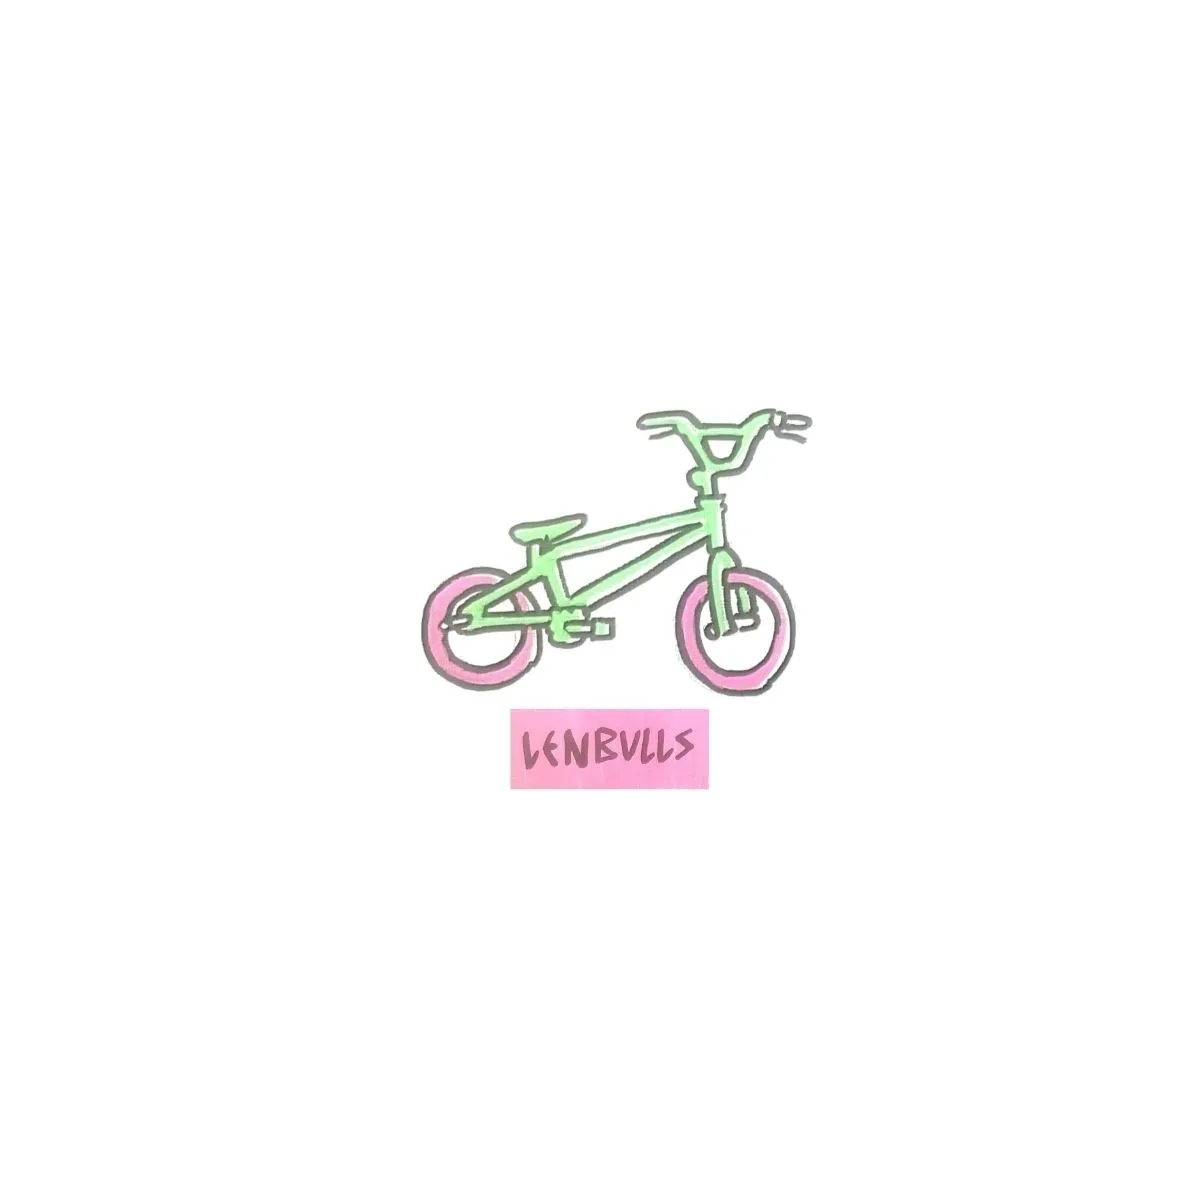 LenBulls Bikelife artwork